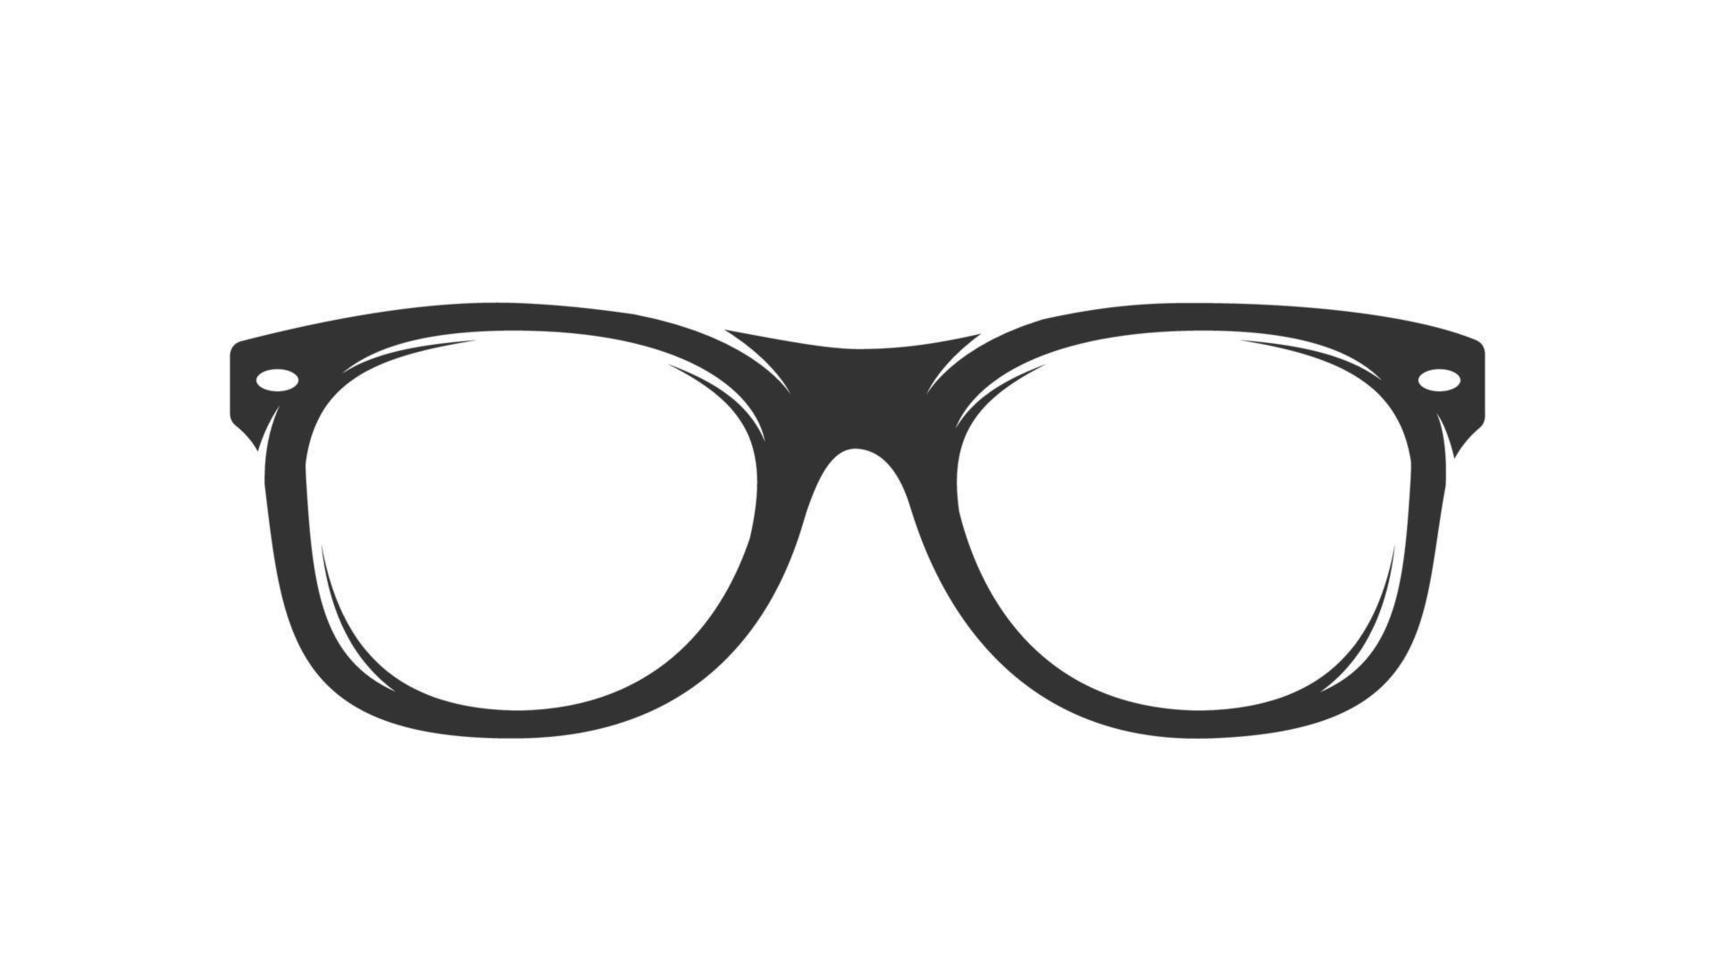 glasögon siluett isolerad på vit bakgrund vektor